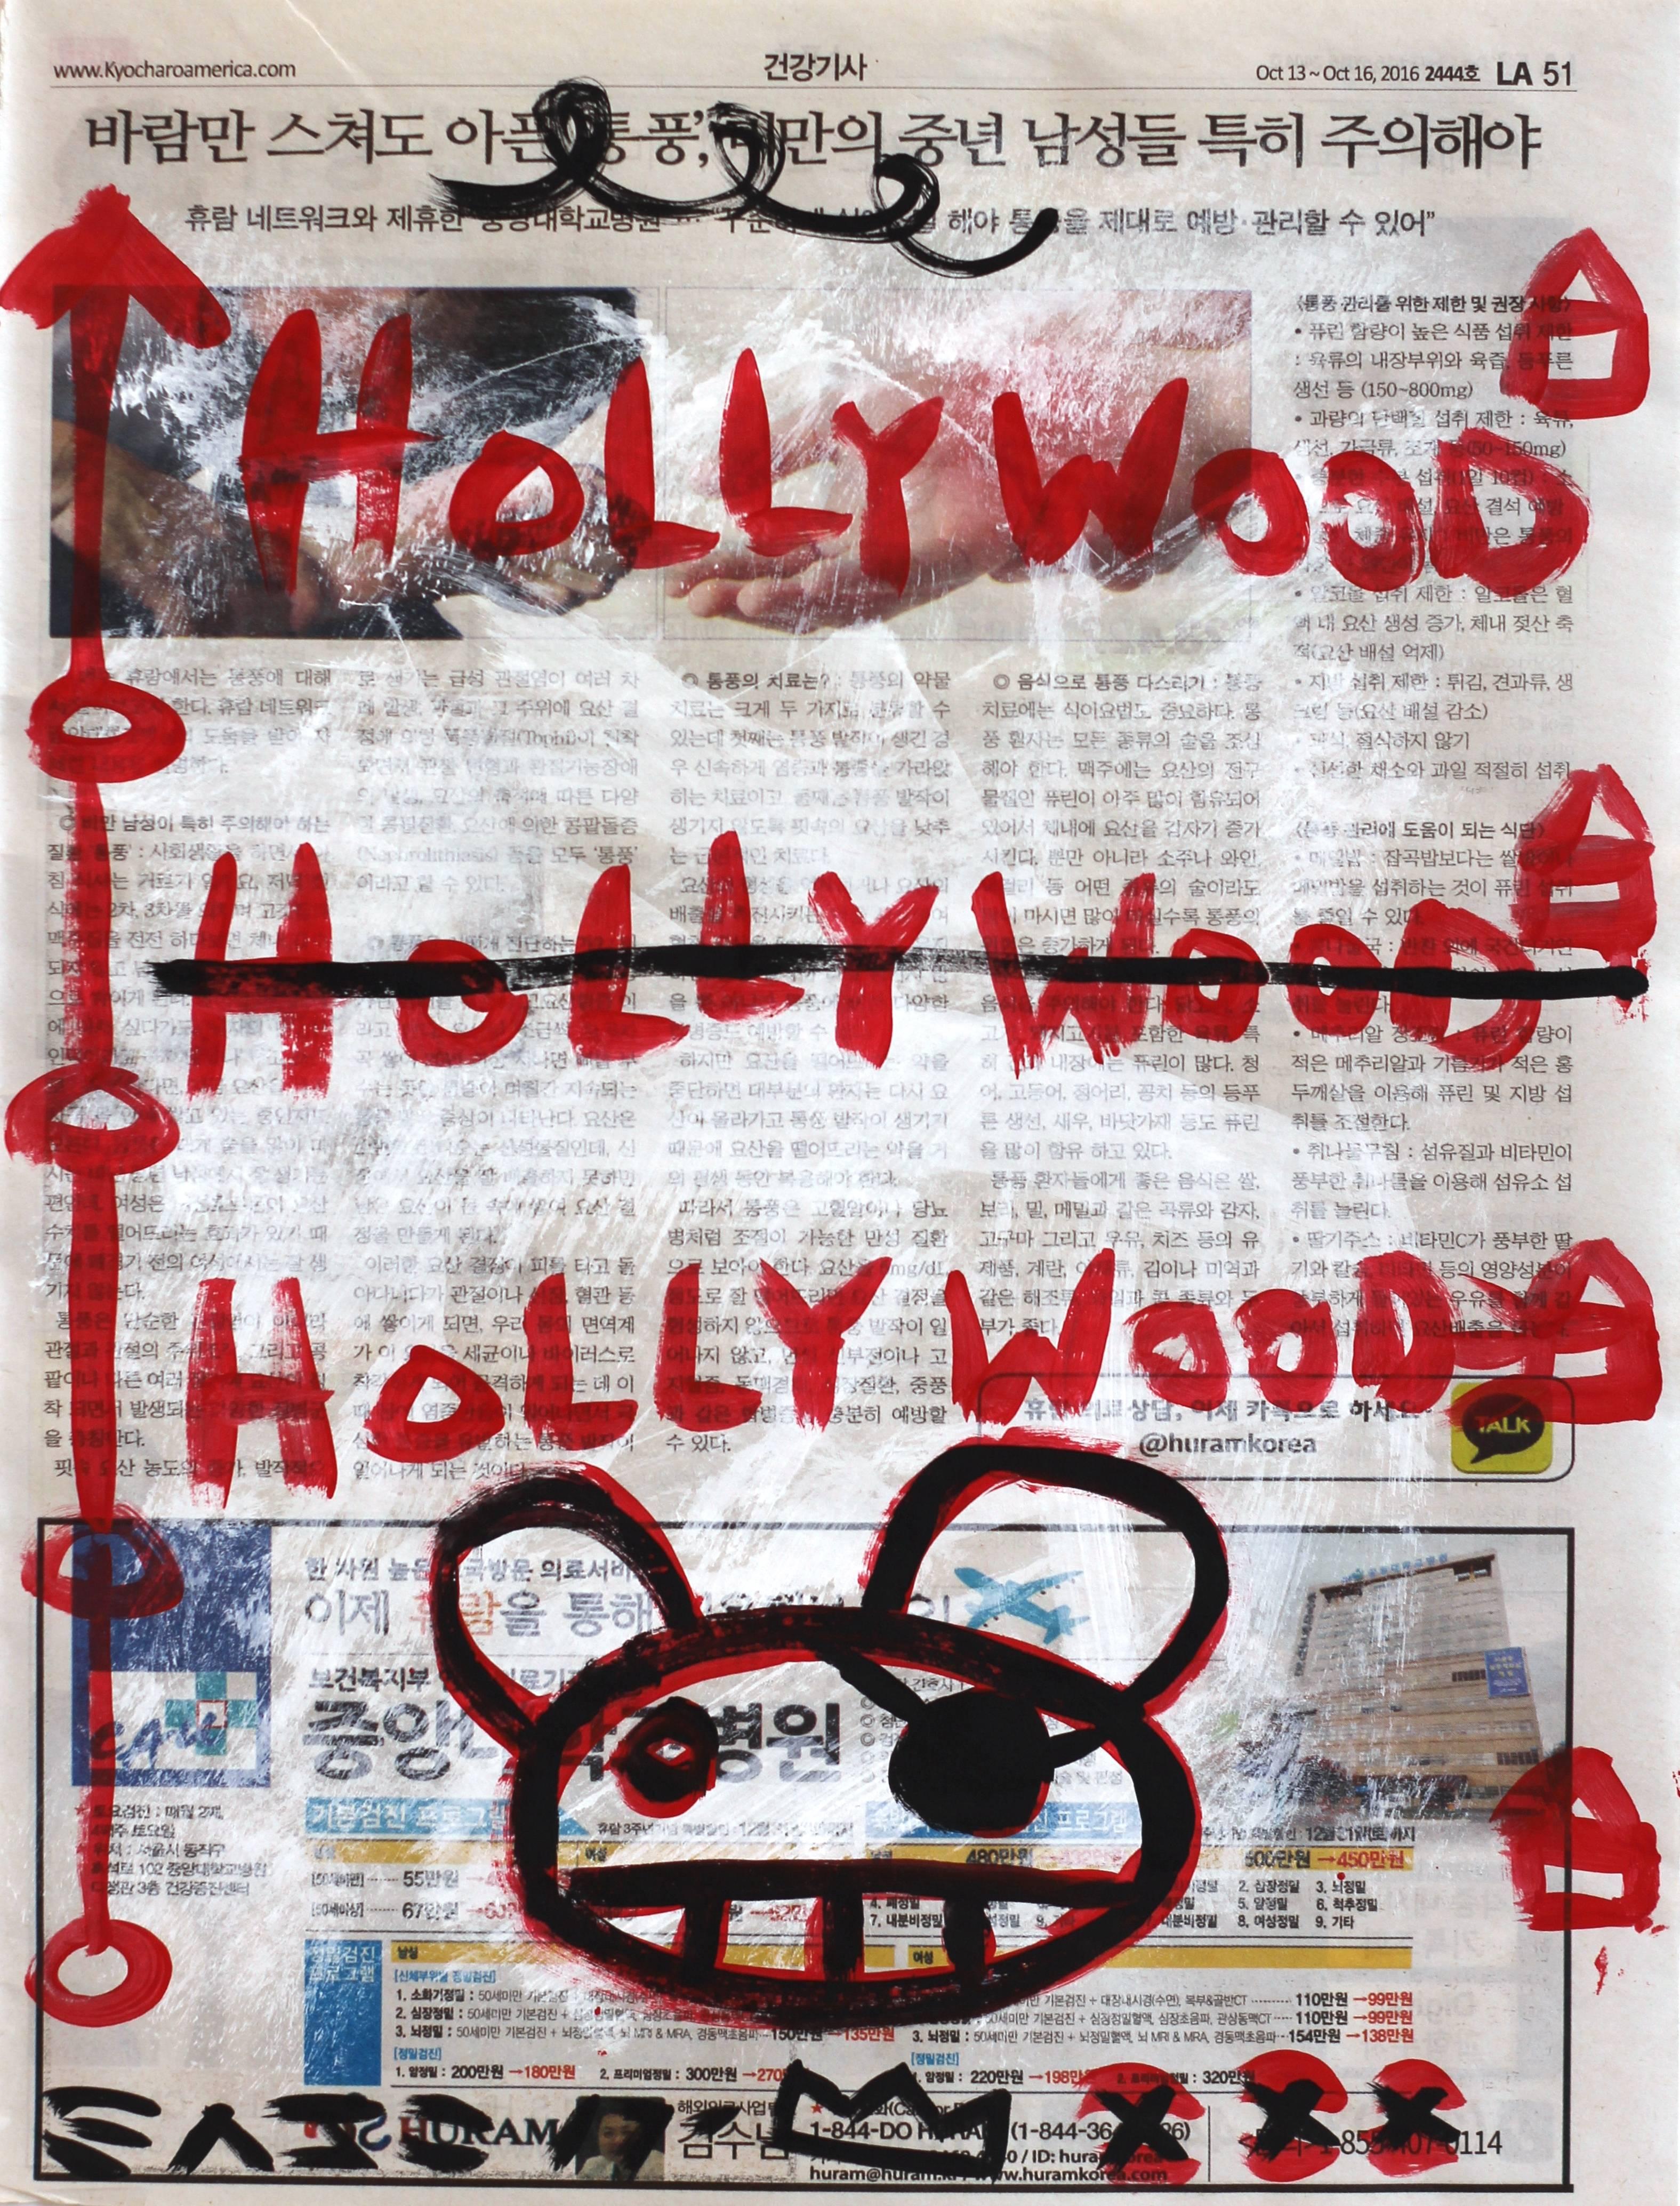 Hollyhood - Mixed Media Art by Gary John